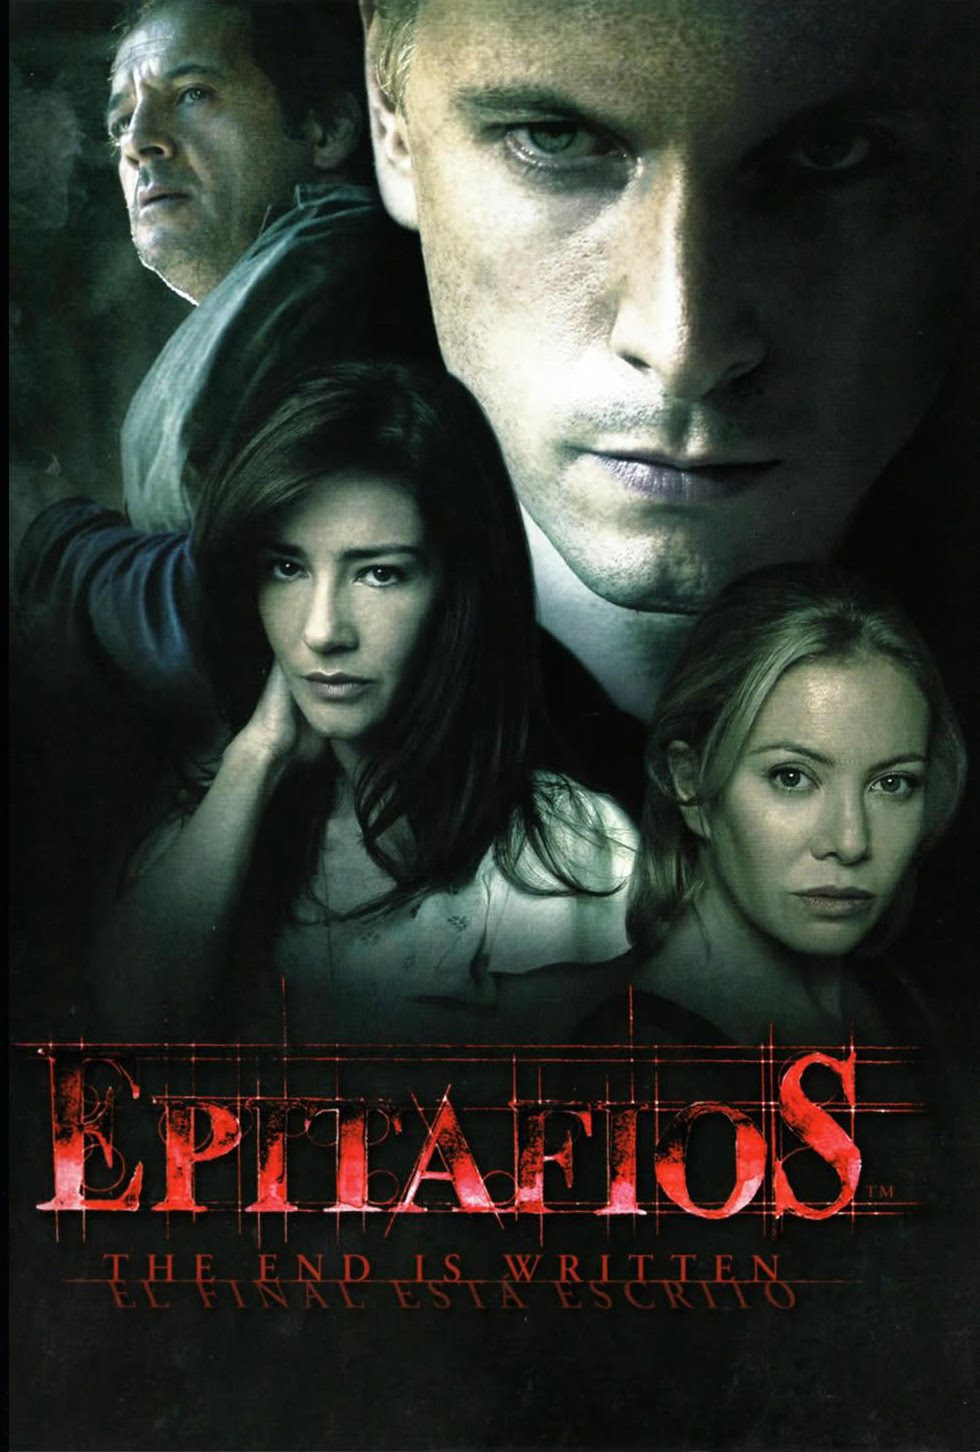 Epitafios: Season 2 movie